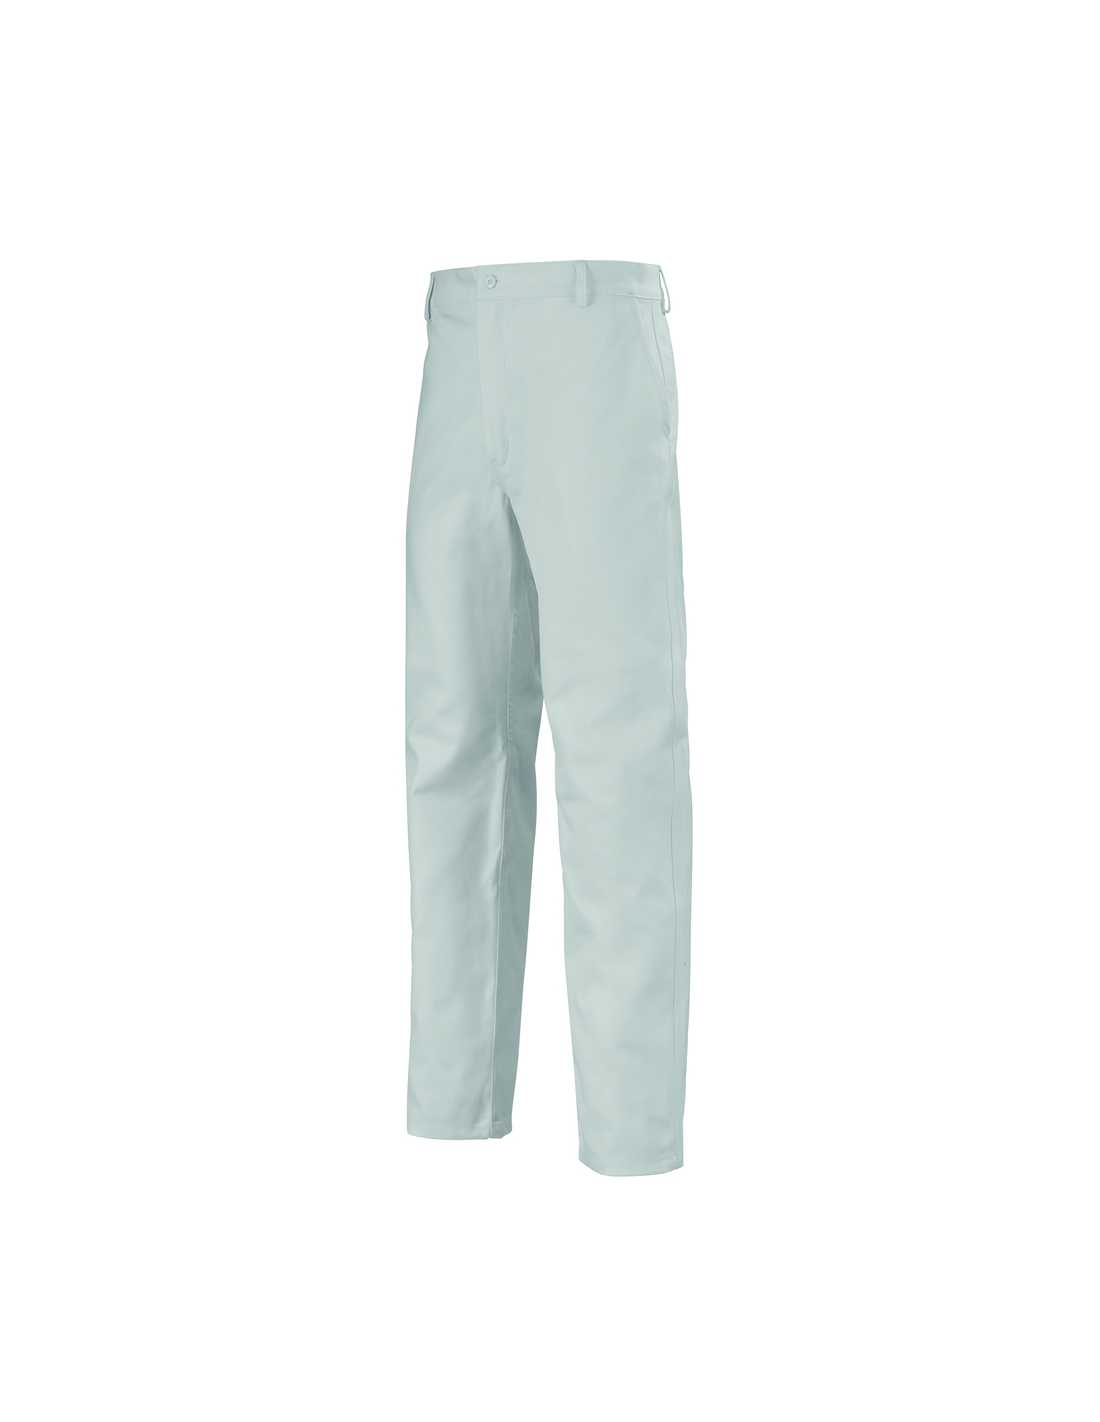 Pantalon 100% coton blanc